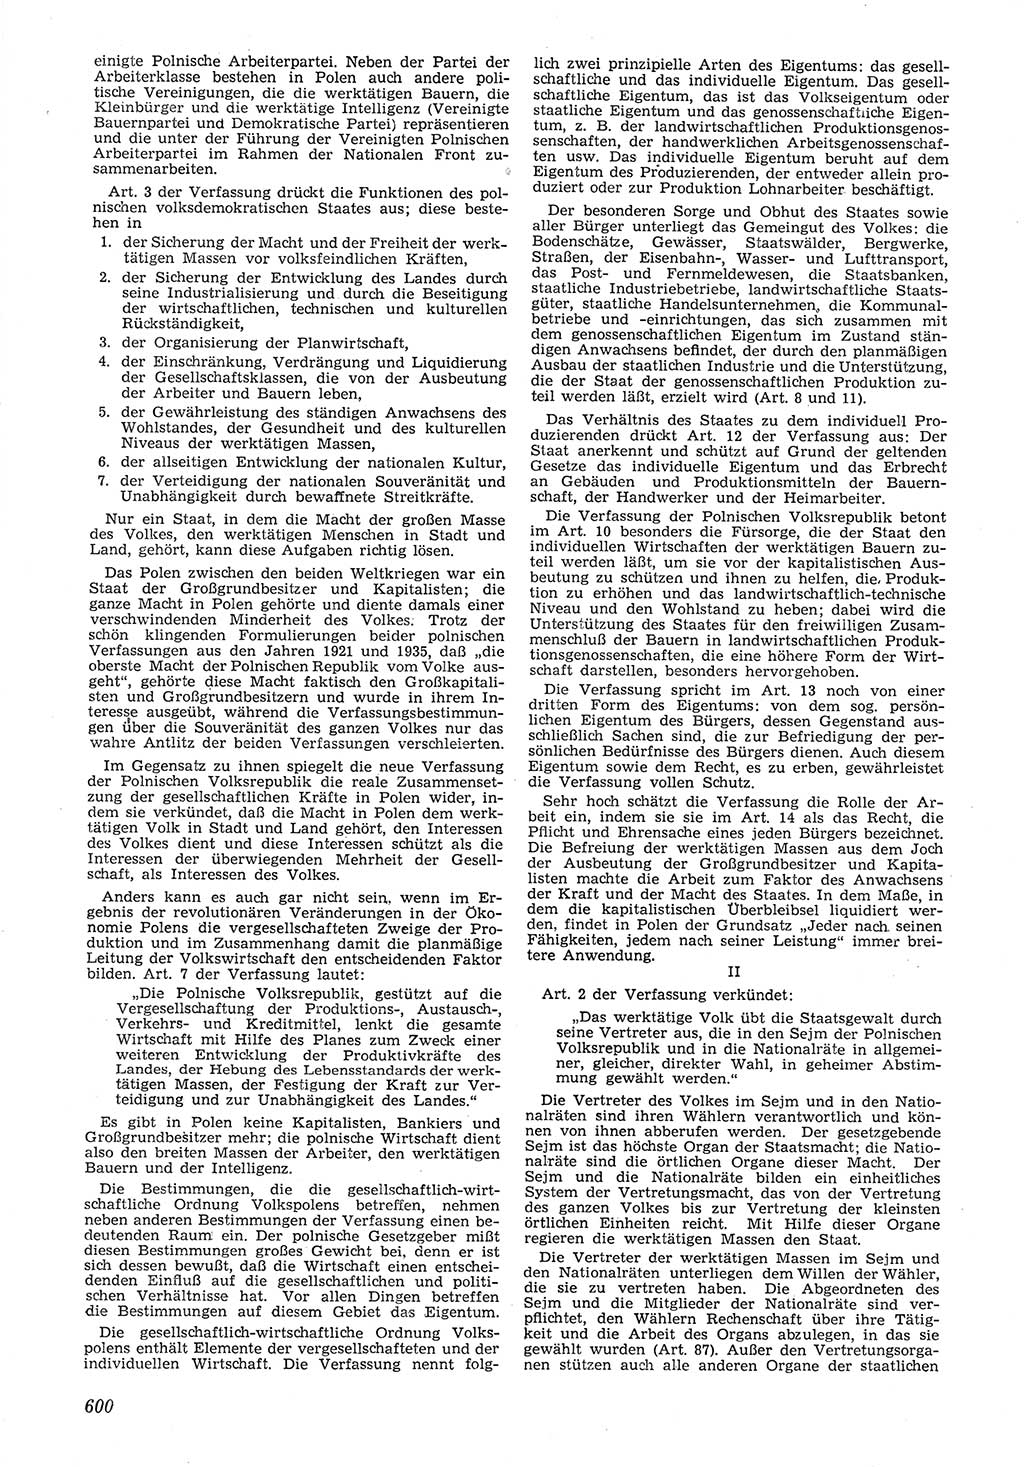 Neue Justiz (NJ), Zeitschrift für Recht und Rechtswissenschaft [Deutsche Demokratische Republik (DDR)], 6. Jahrgang 1952, Seite 600 (NJ DDR 1952, S. 600)